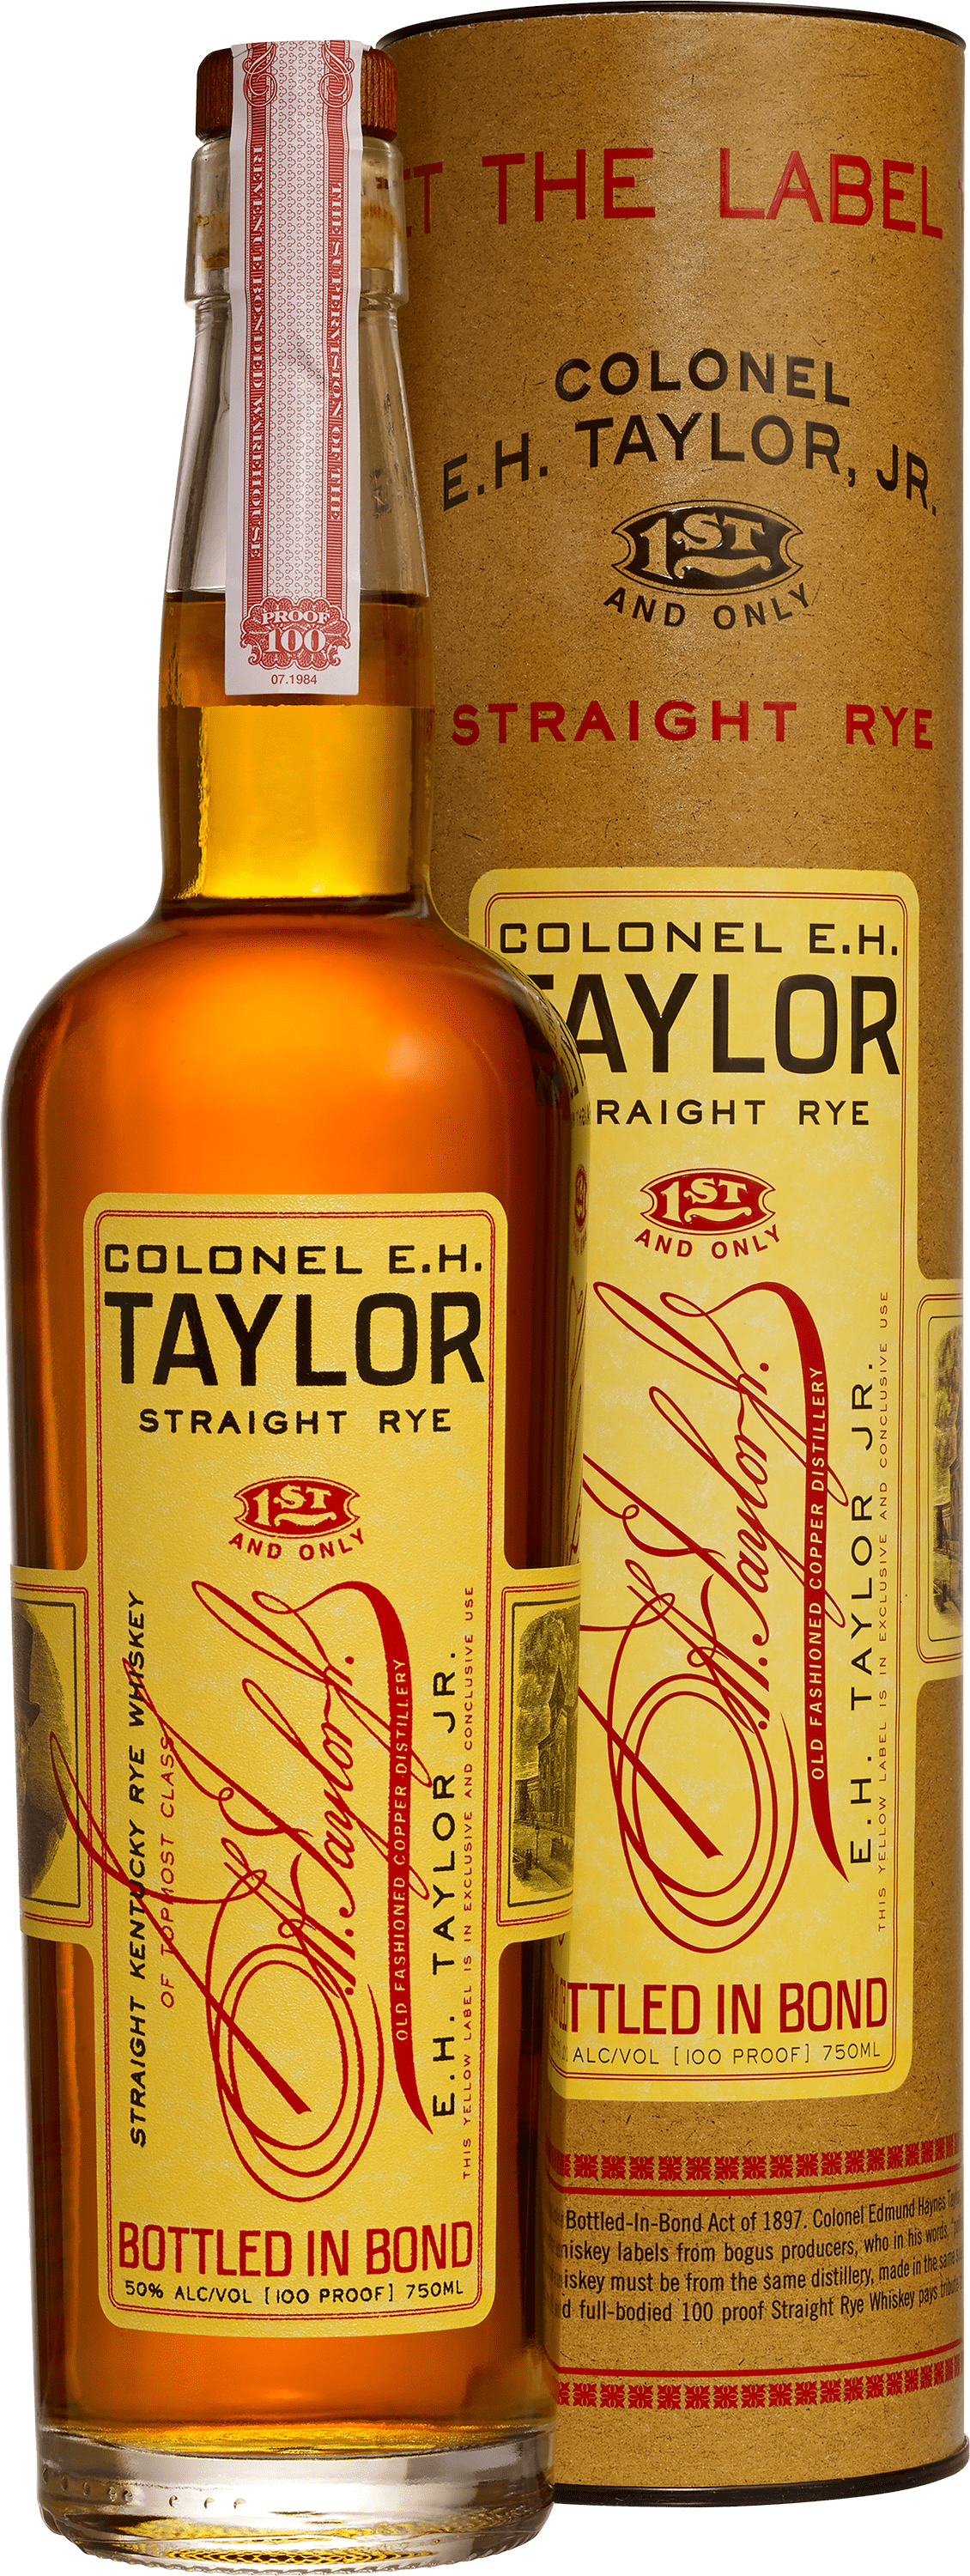 Colonel E.H. Taylor Jr. Straight Rye